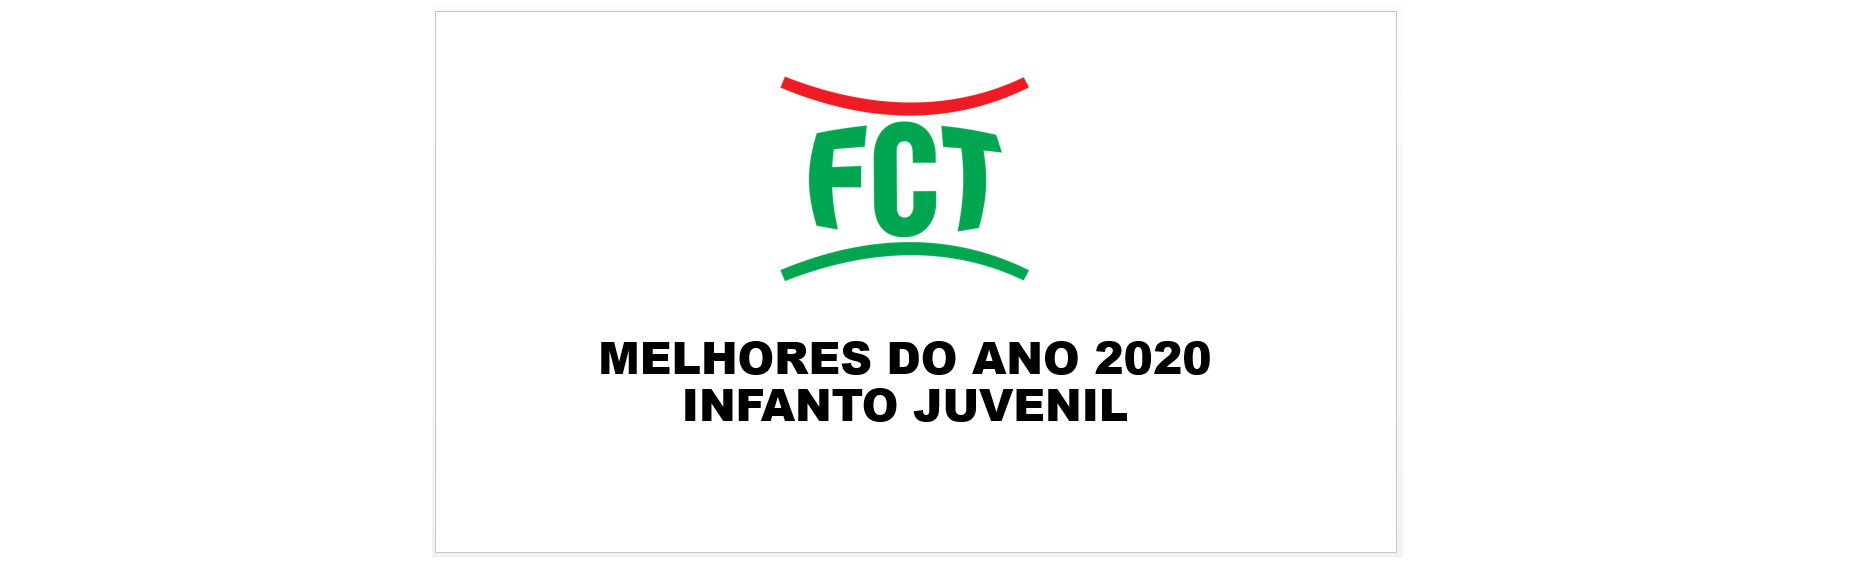 MELHORES DO ANO 2020 - CATEGORIA INFANTO JUVENIL